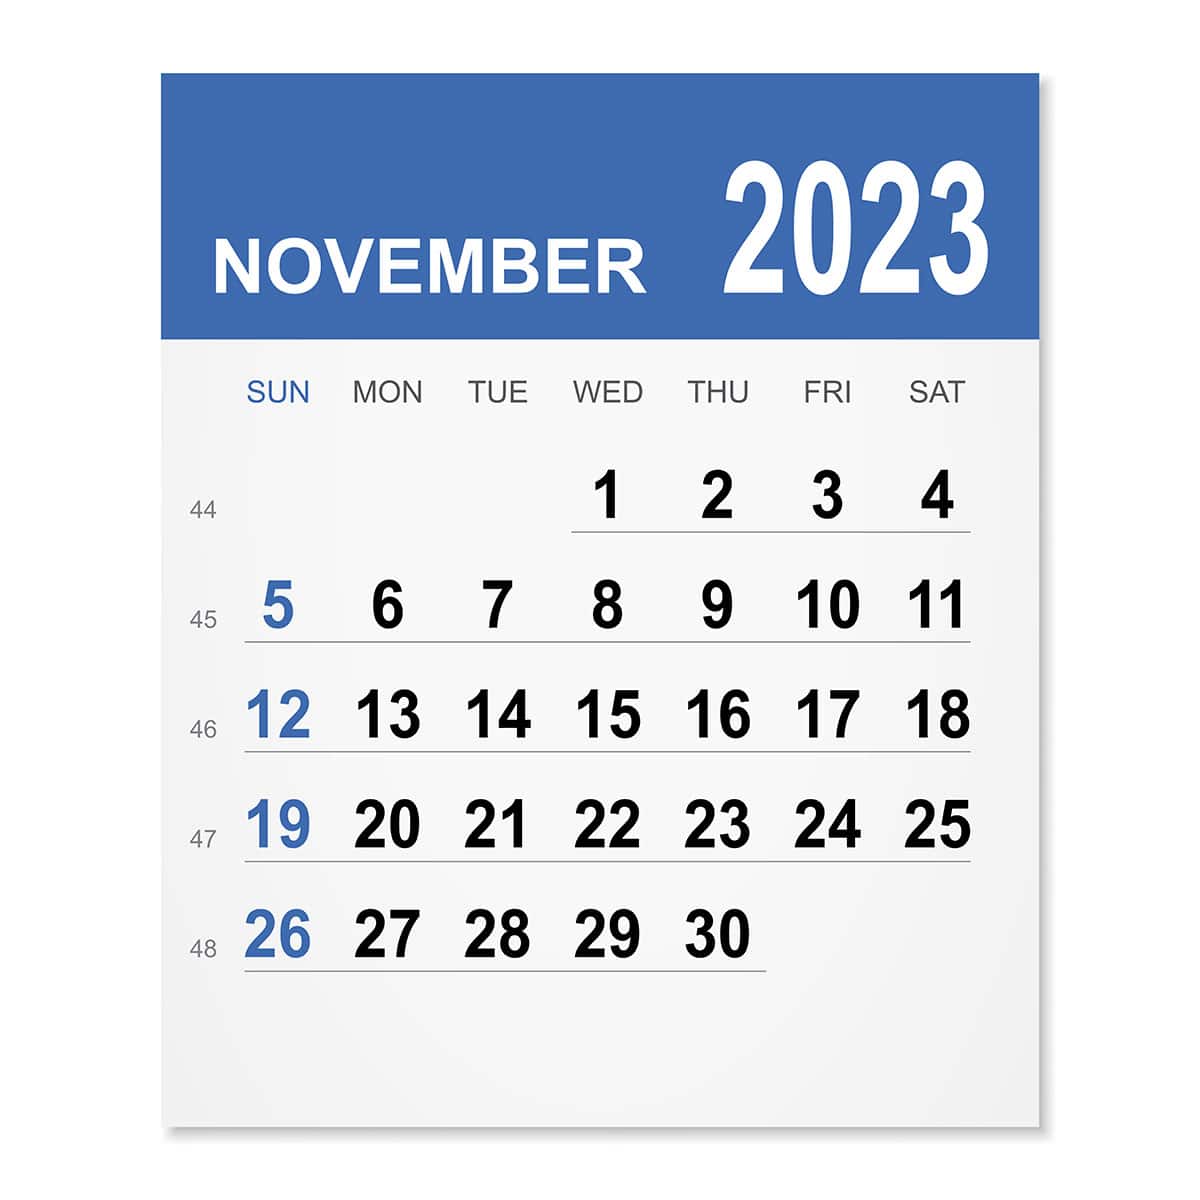 November 2023 Moving Discounts